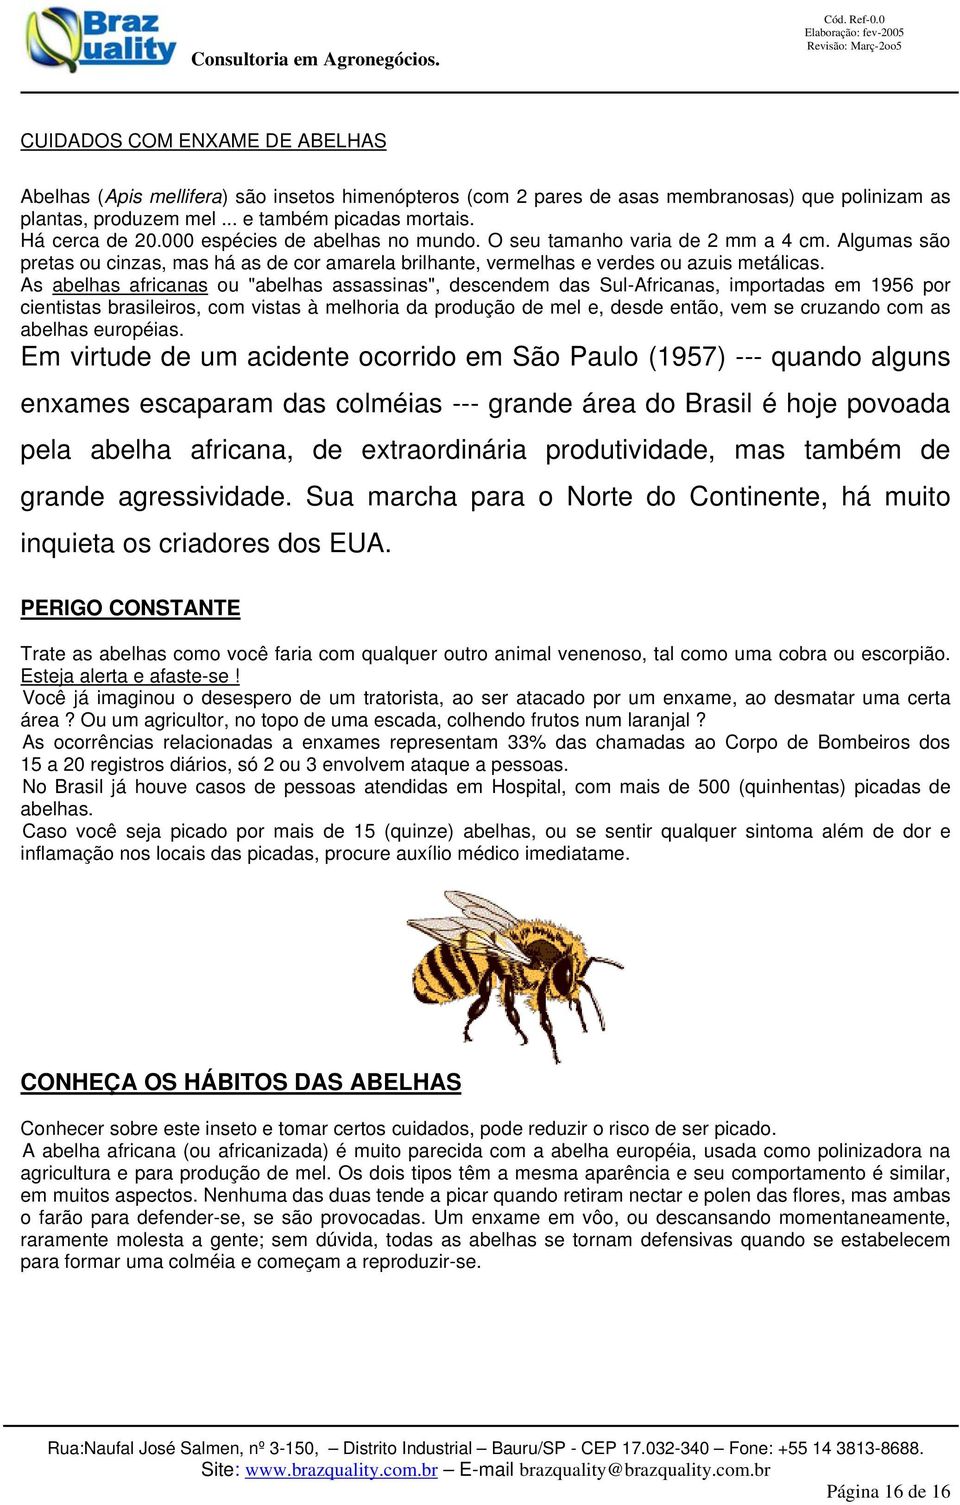 As abelhas africanas ou "abelhas assassinas", descendem das Sul-Africanas, importadas em 1956 por cientistas brasileiros, com vistas à melhoria da produção de mel e, desde então, vem se cruzando com